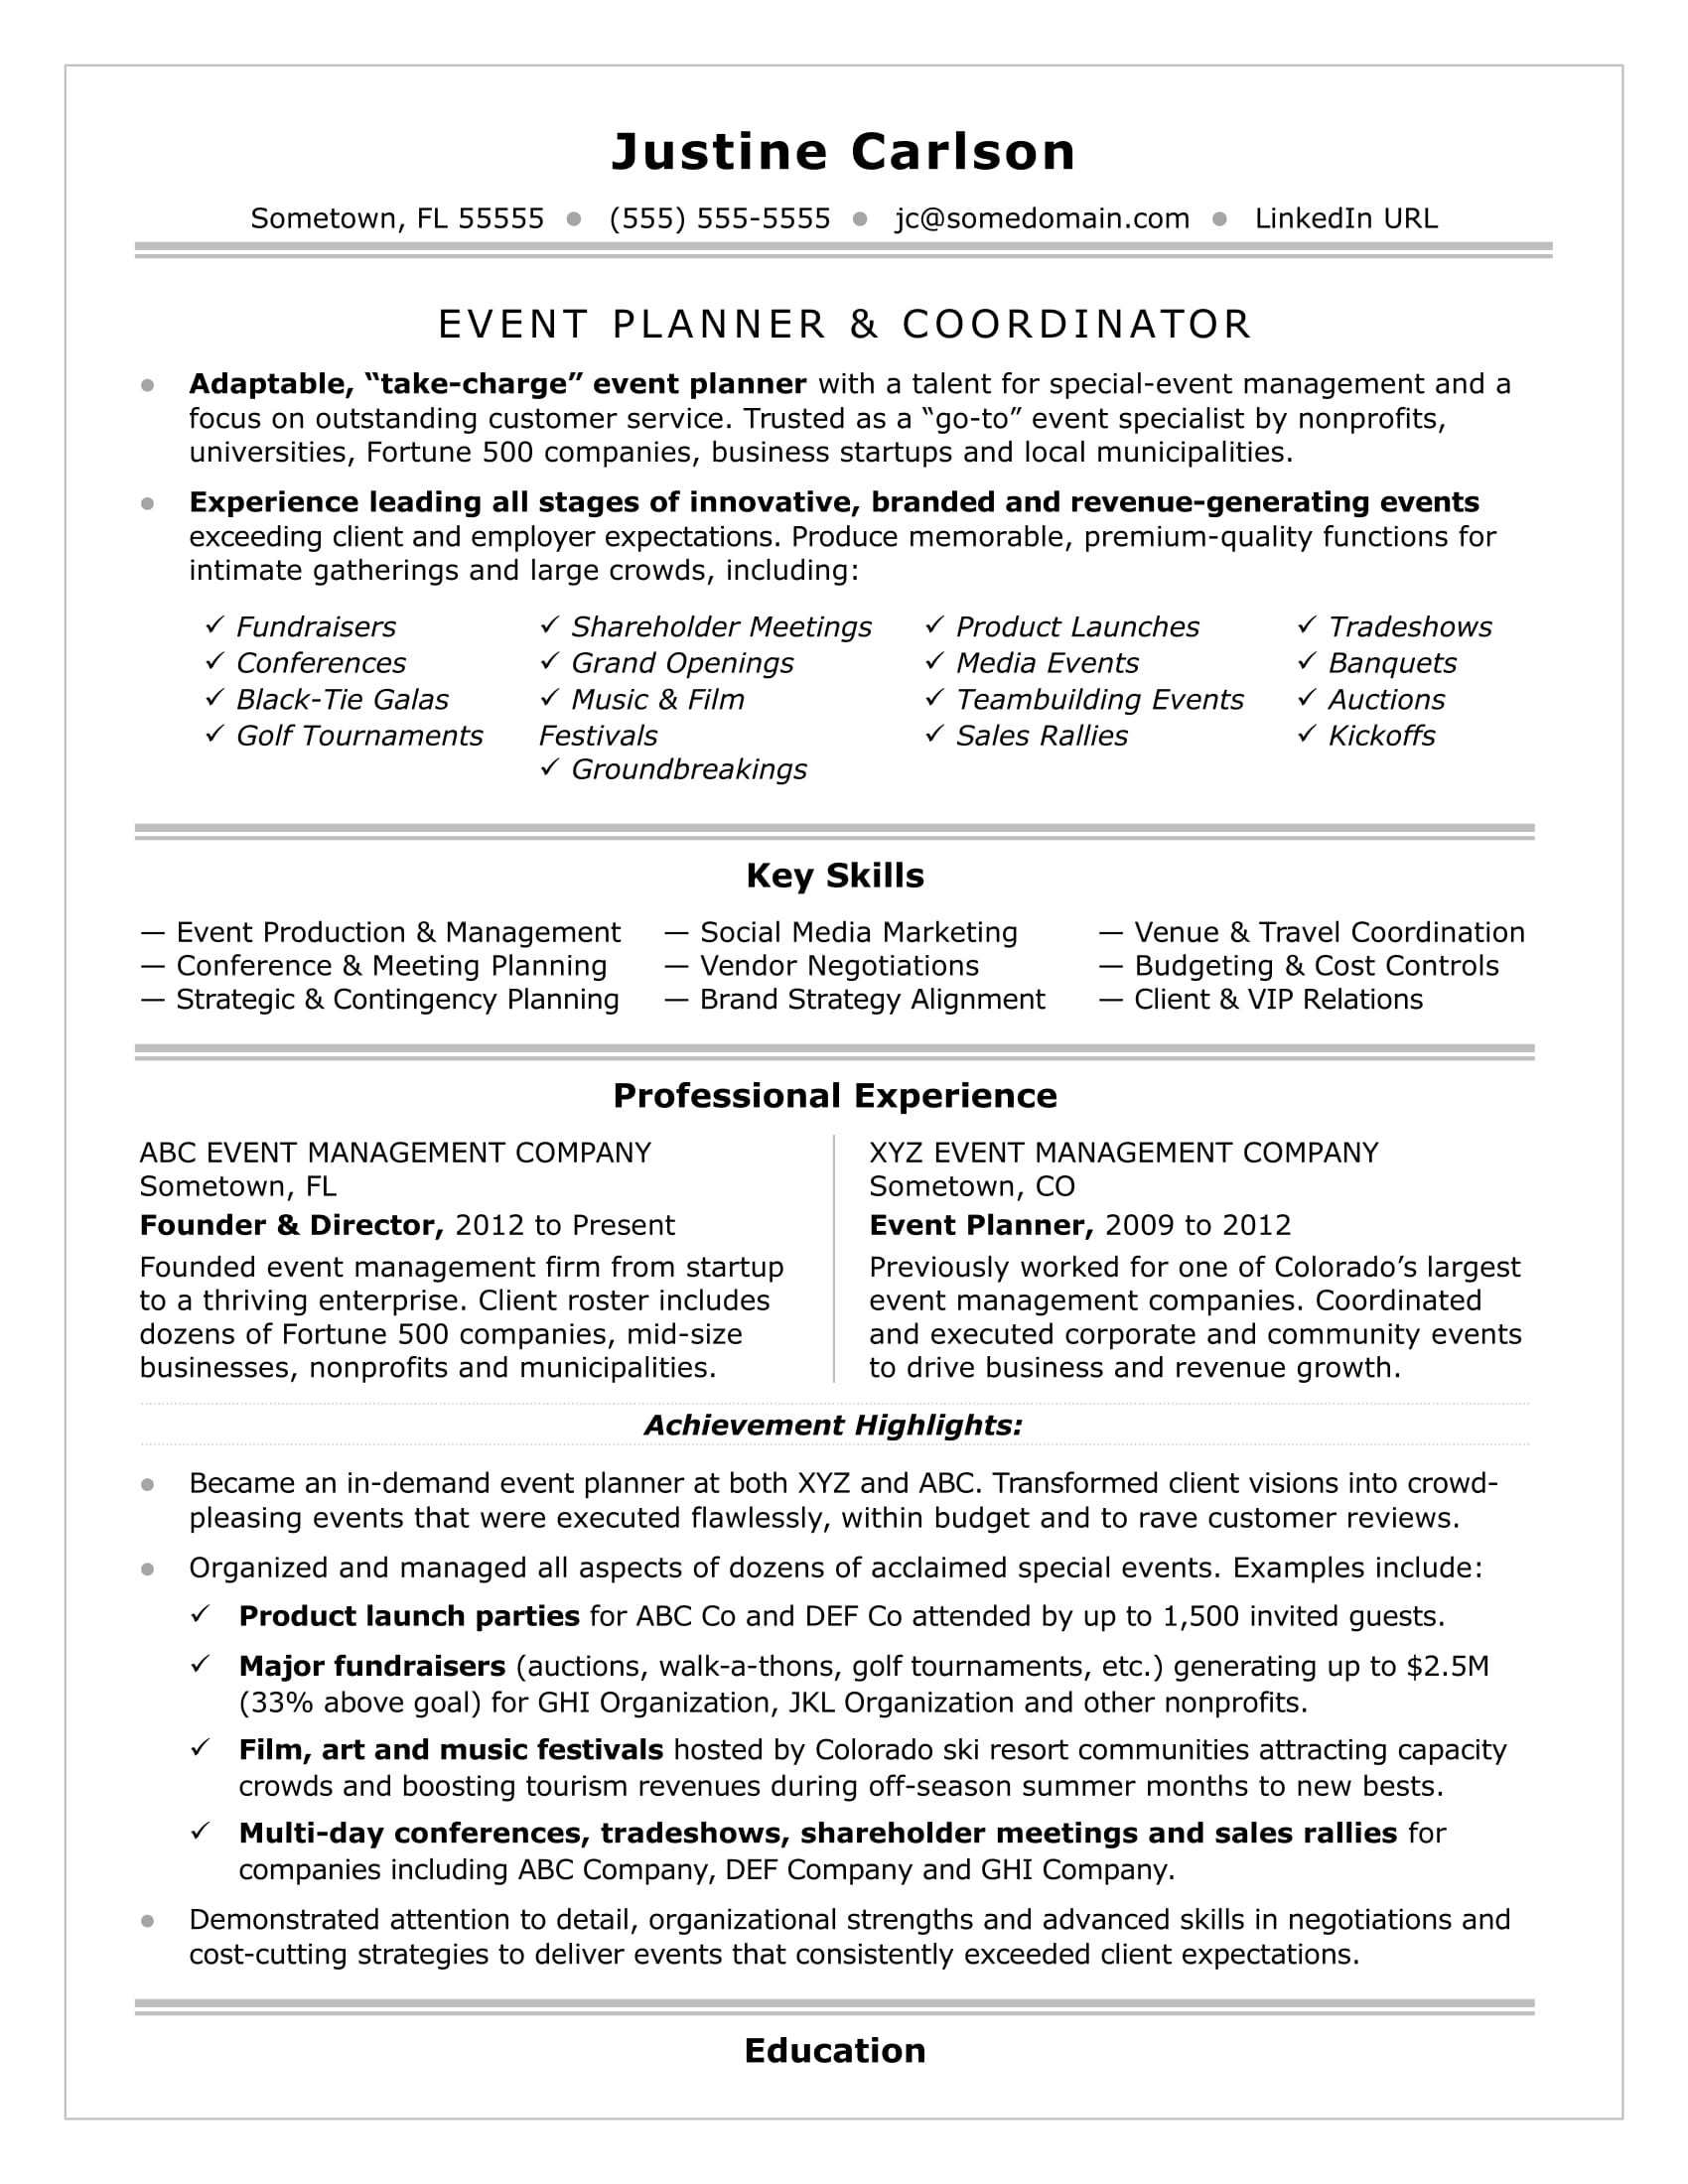 Sample Resume for event Planner assistant event Coordinator Resume Sample Monster.com